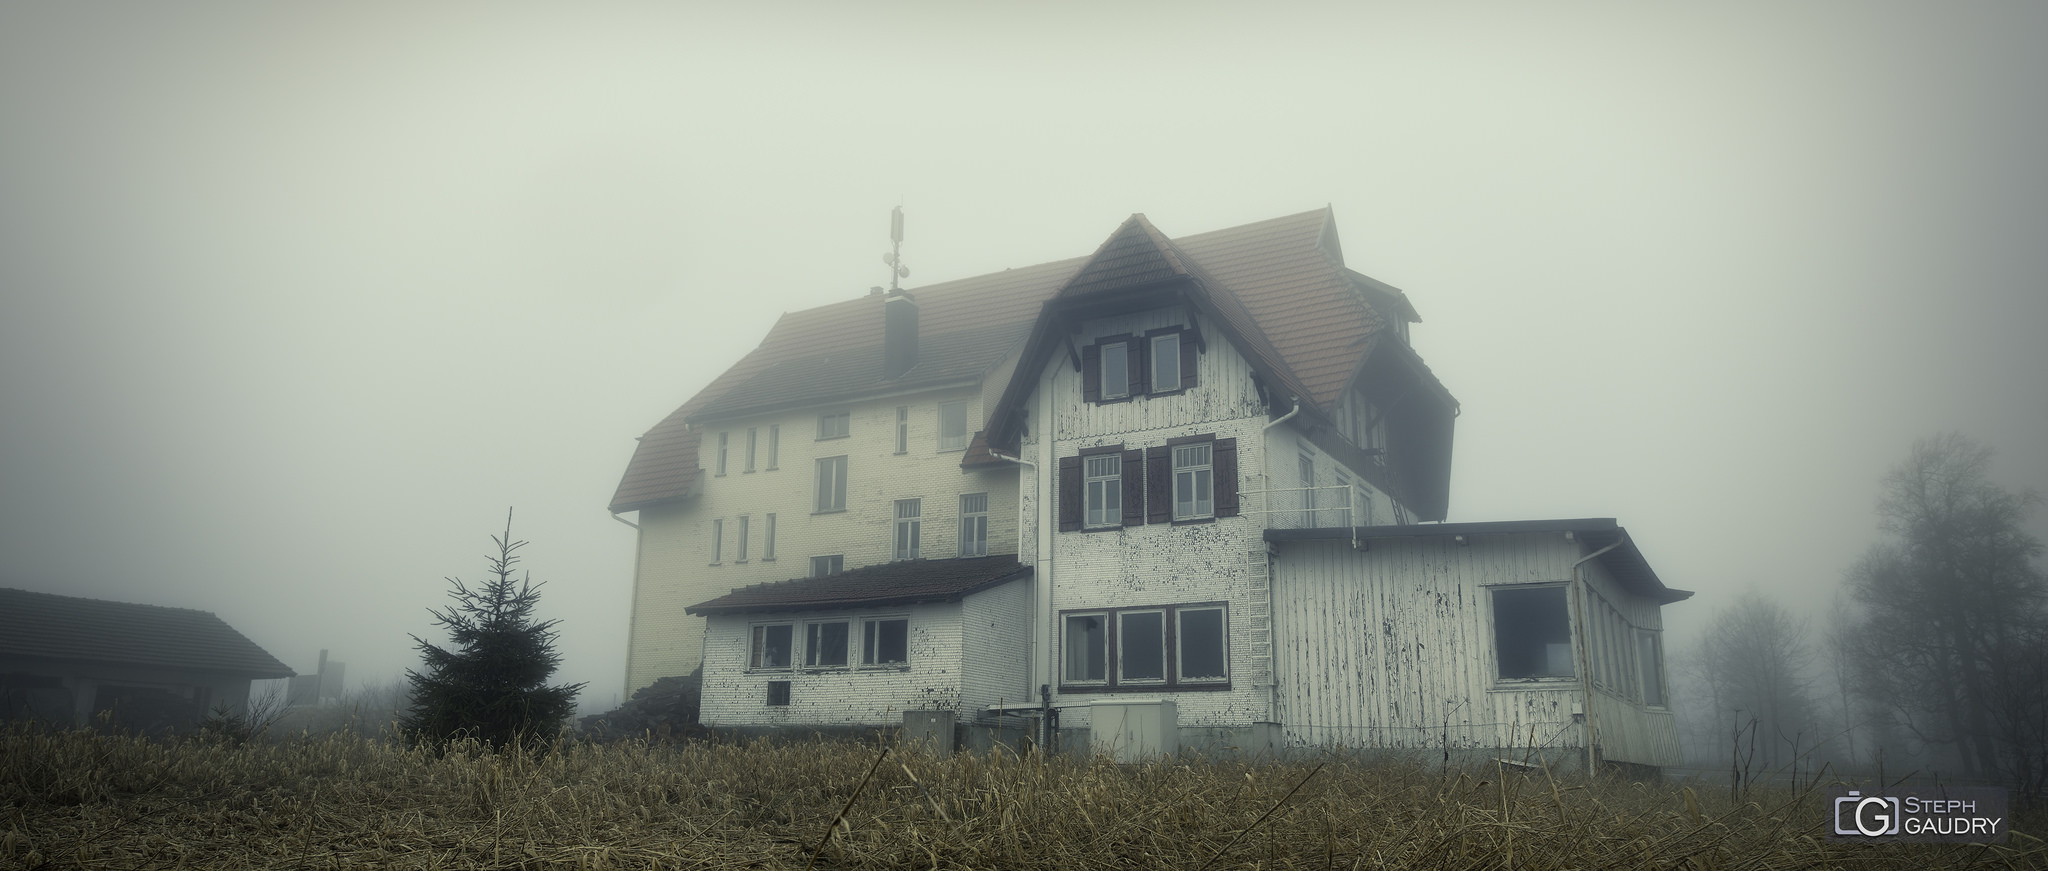 Haunted house in the mist [Cliquez pour lancer le diaporama]